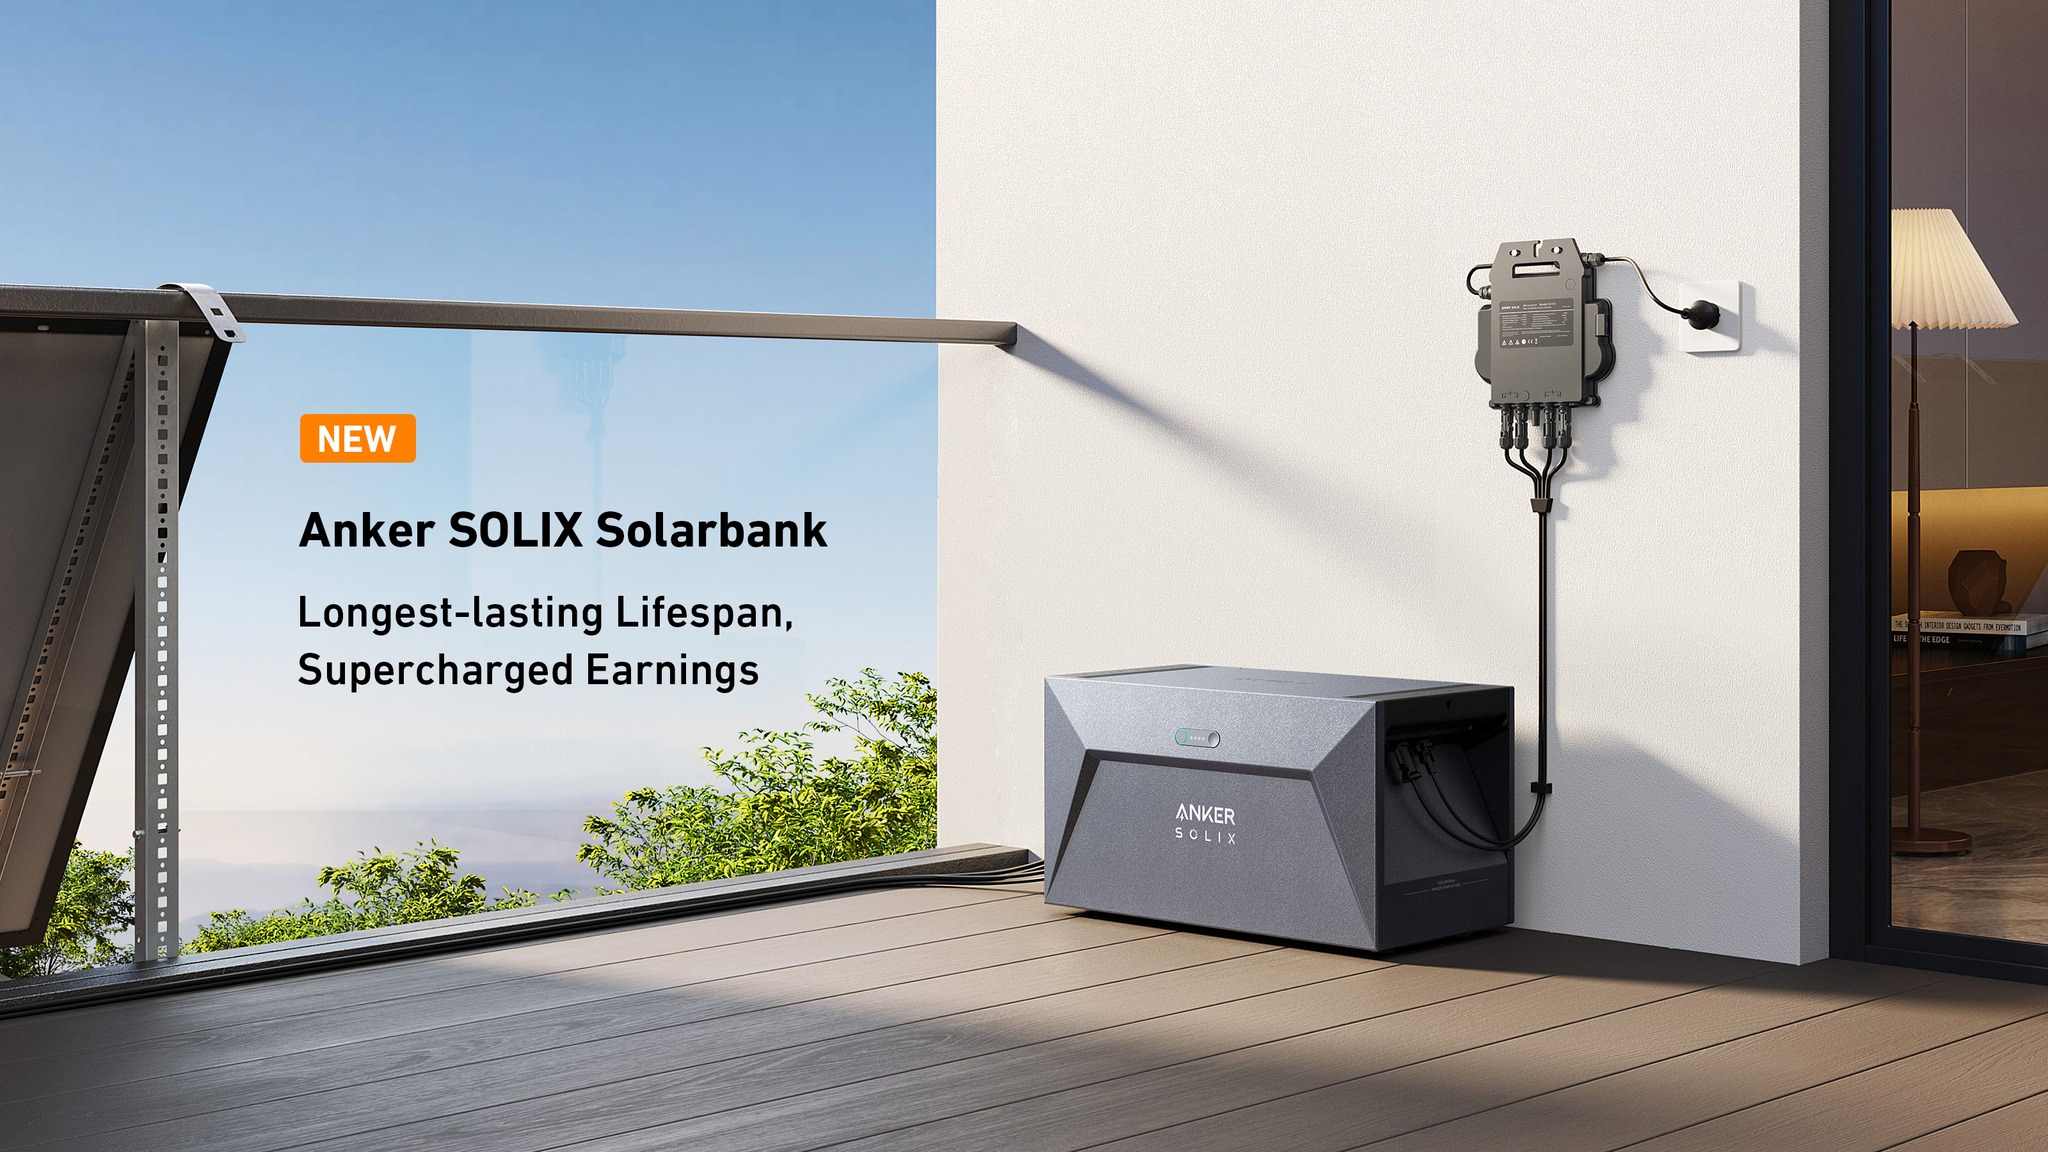 Anker Balkonbatterie Solarbank E1600 im Europalager